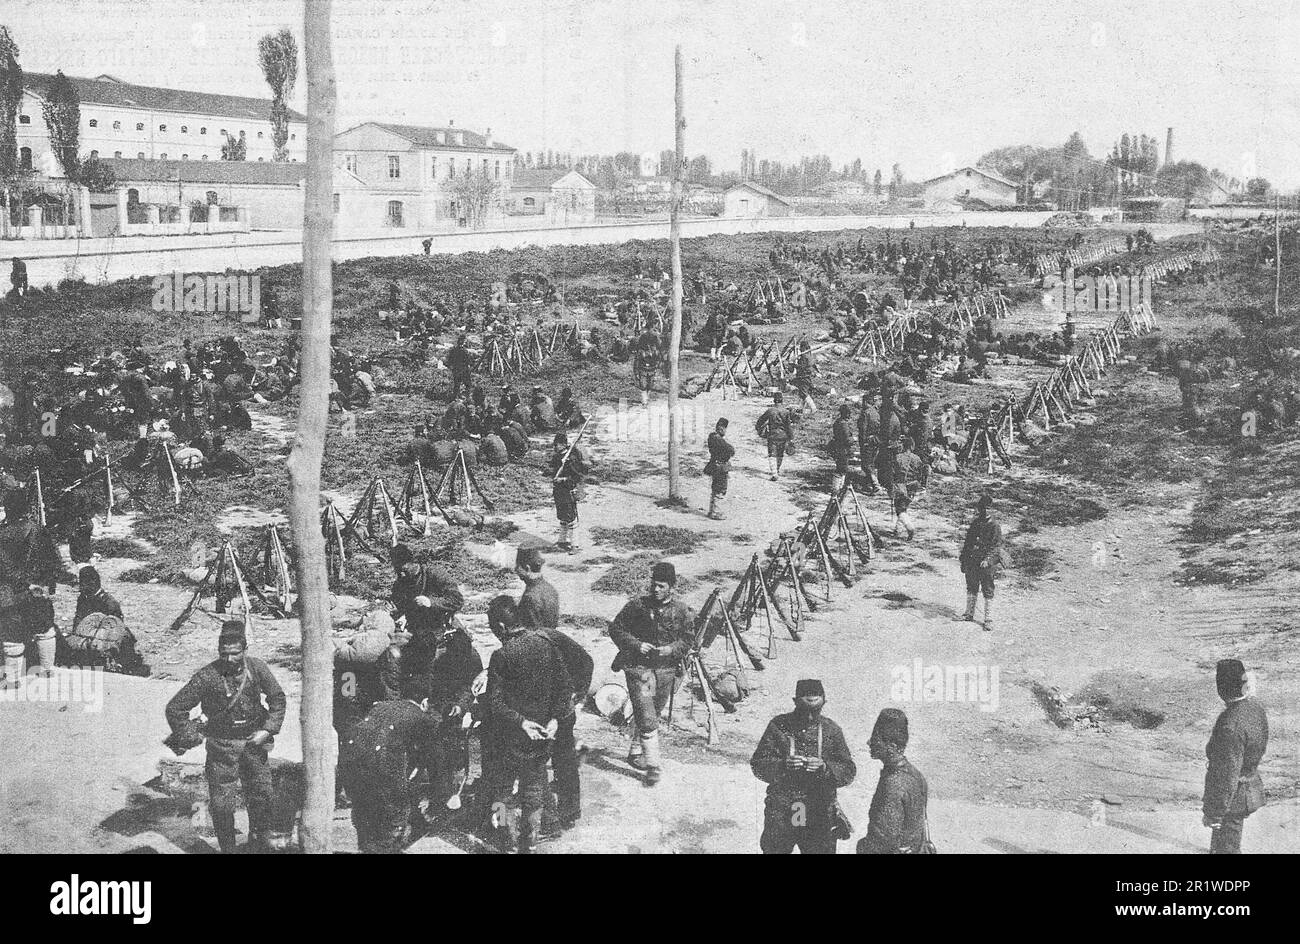 Invio di truppe turche in luoghi coperti dai ribelli albanesi. Foto dal 1911. Foto Stock